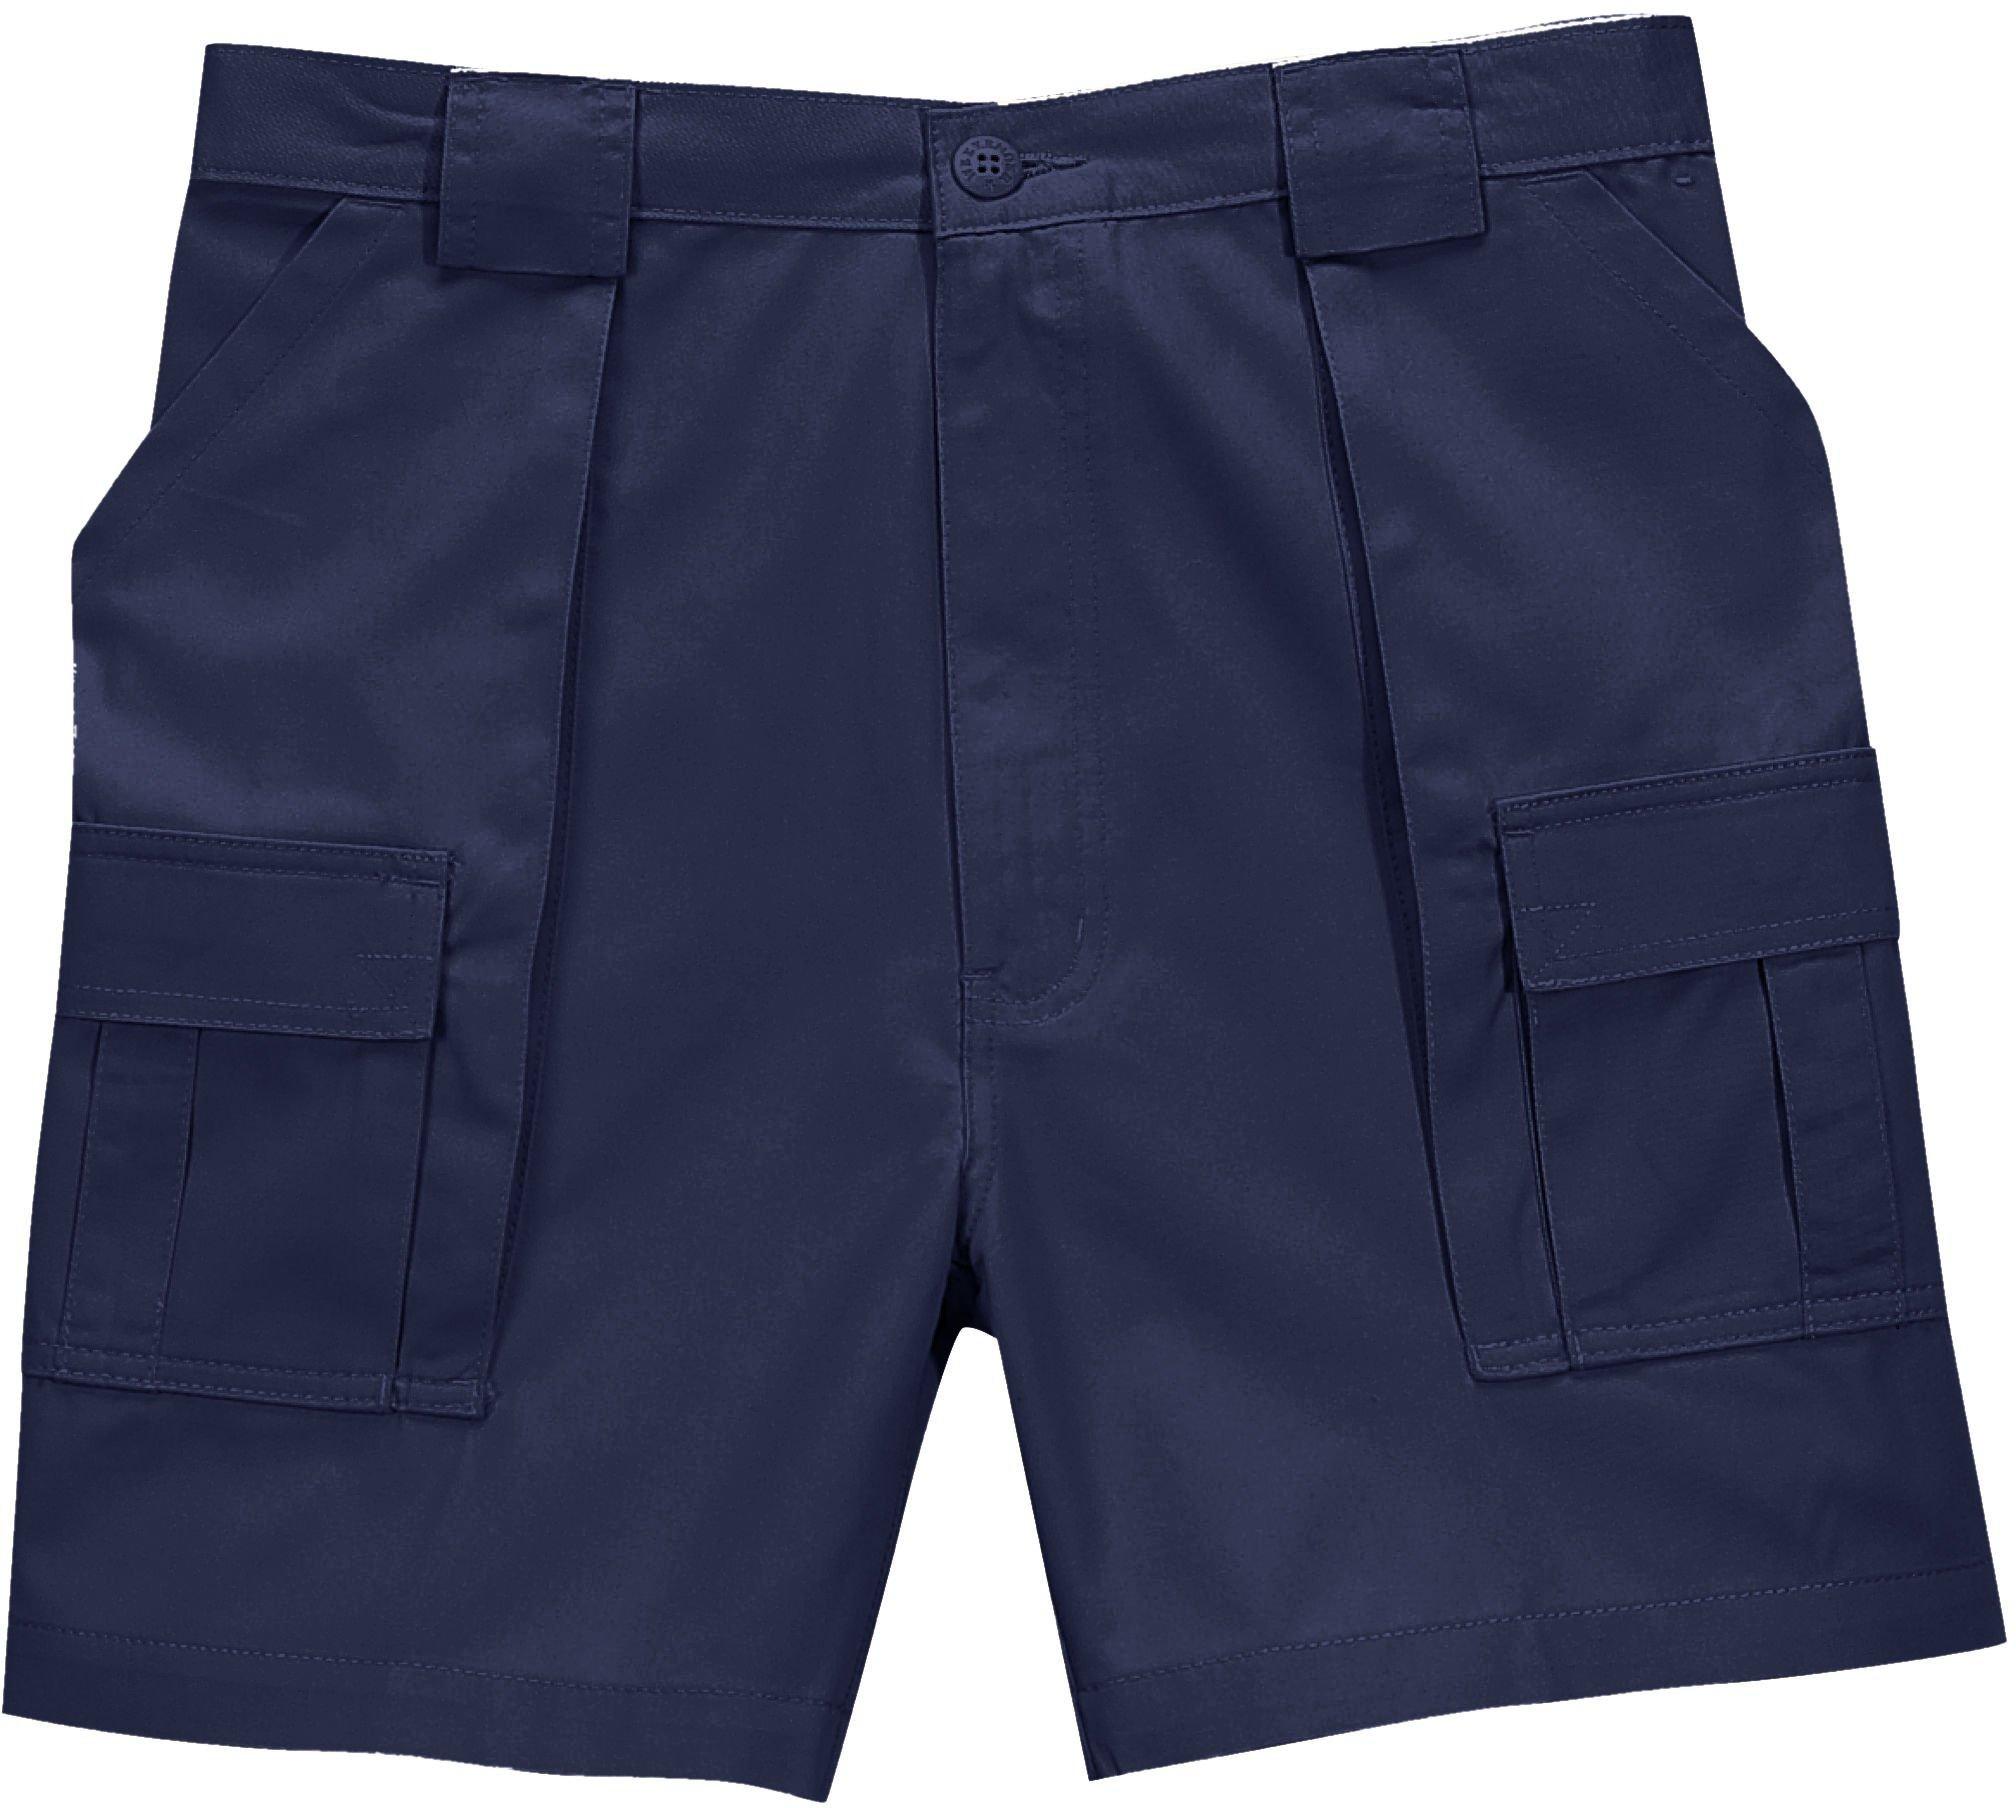 Mens Big & Tall Six Pocket Trader Shorts